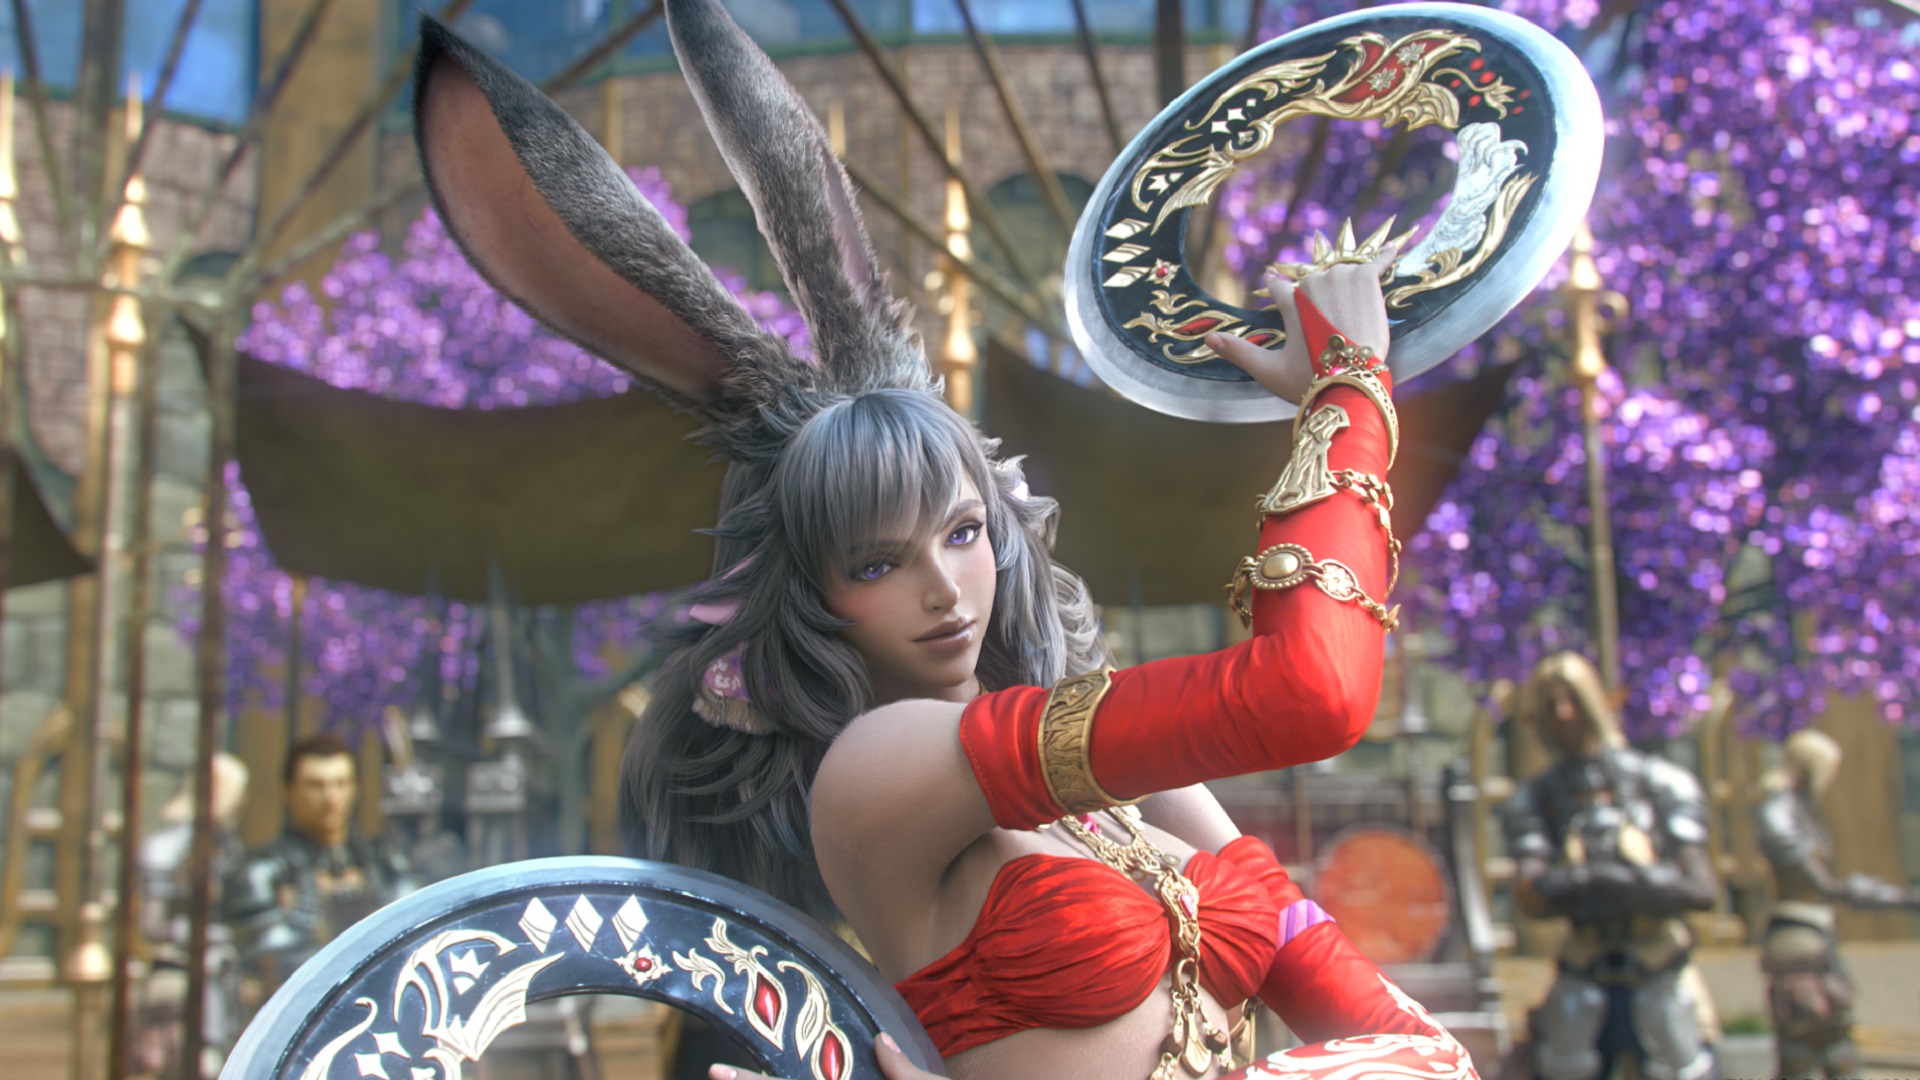 Final Fantasy XIV Dancer Job Guide: Tout ce que vous devez savoir | Pcgamesn